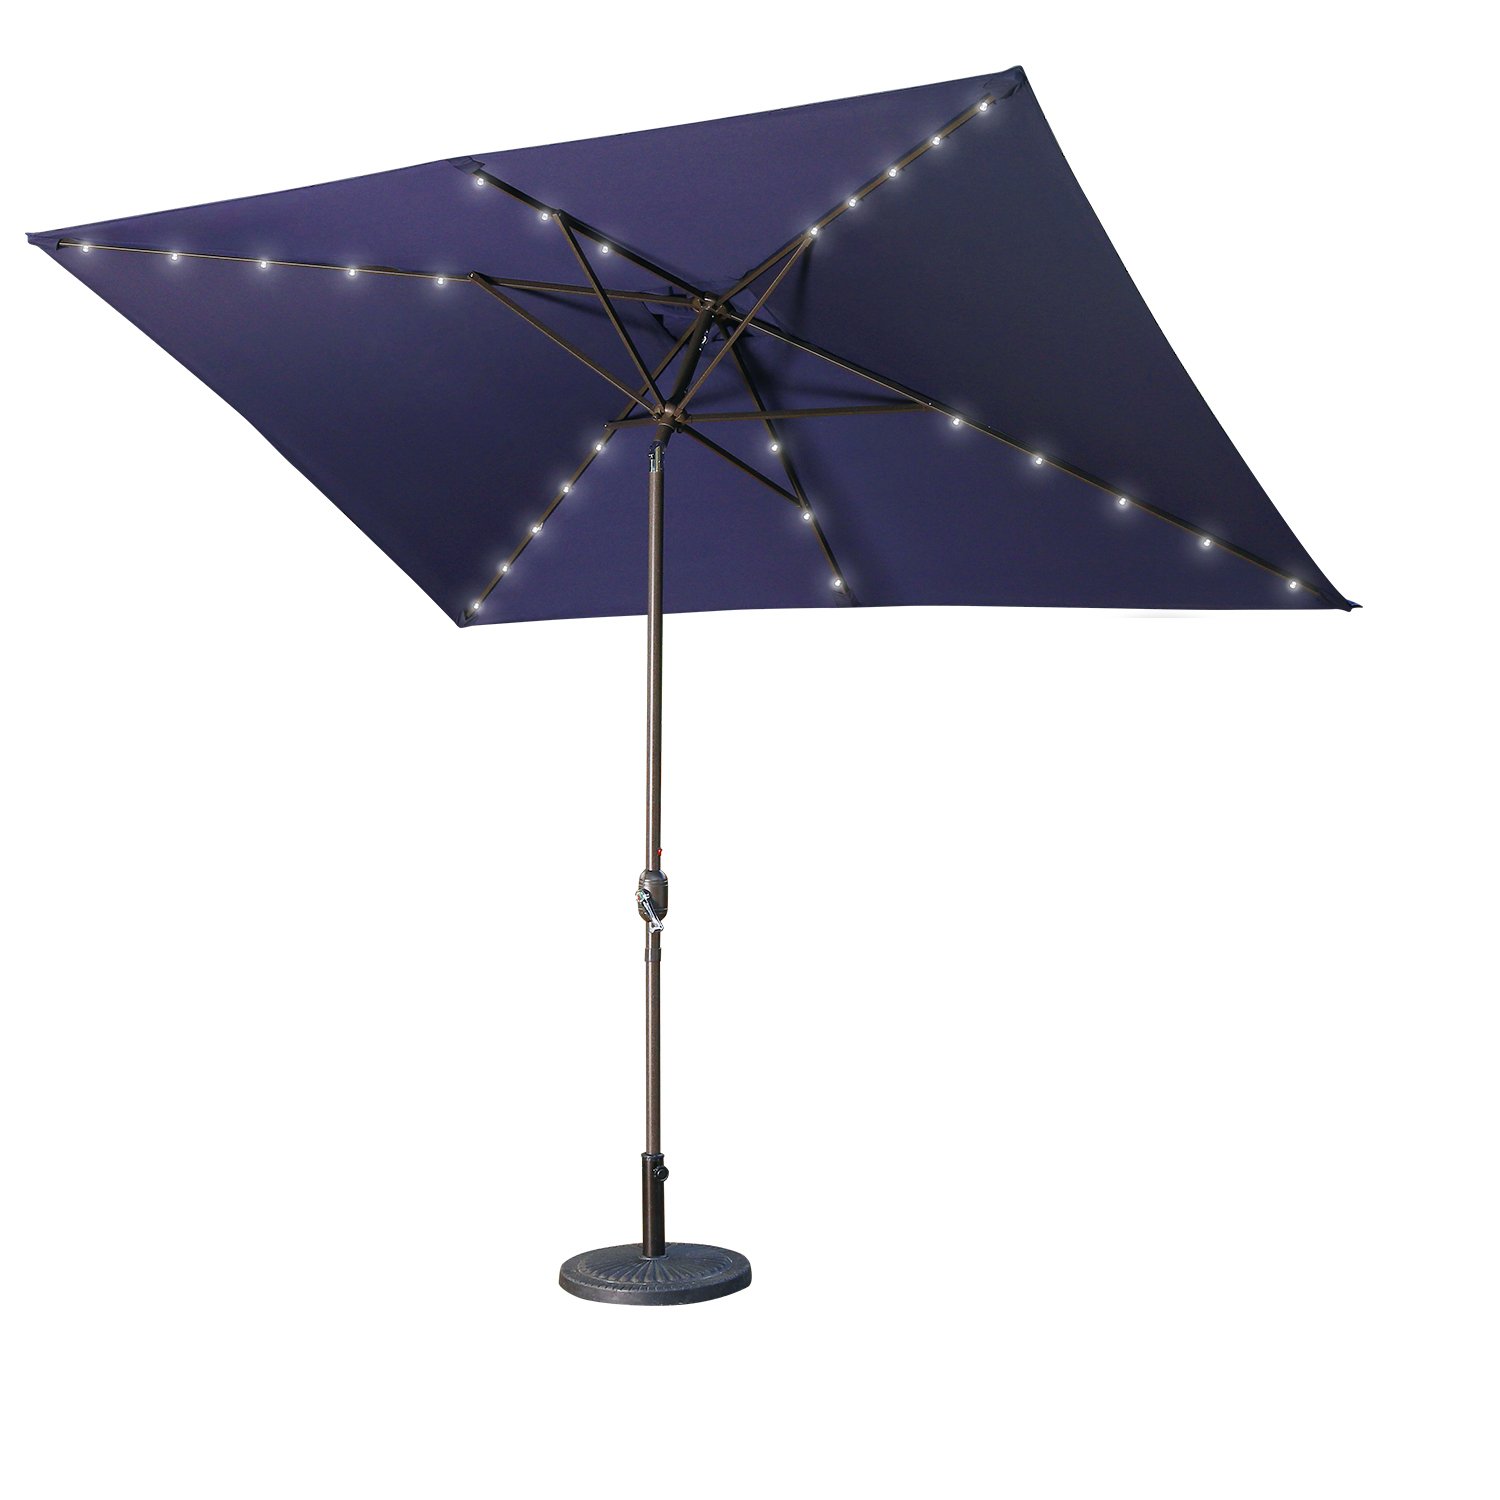 Casainc 10 ft. Aluminum Rectangular Market LED Patio Umbrella in Navy Blue-CASAINC